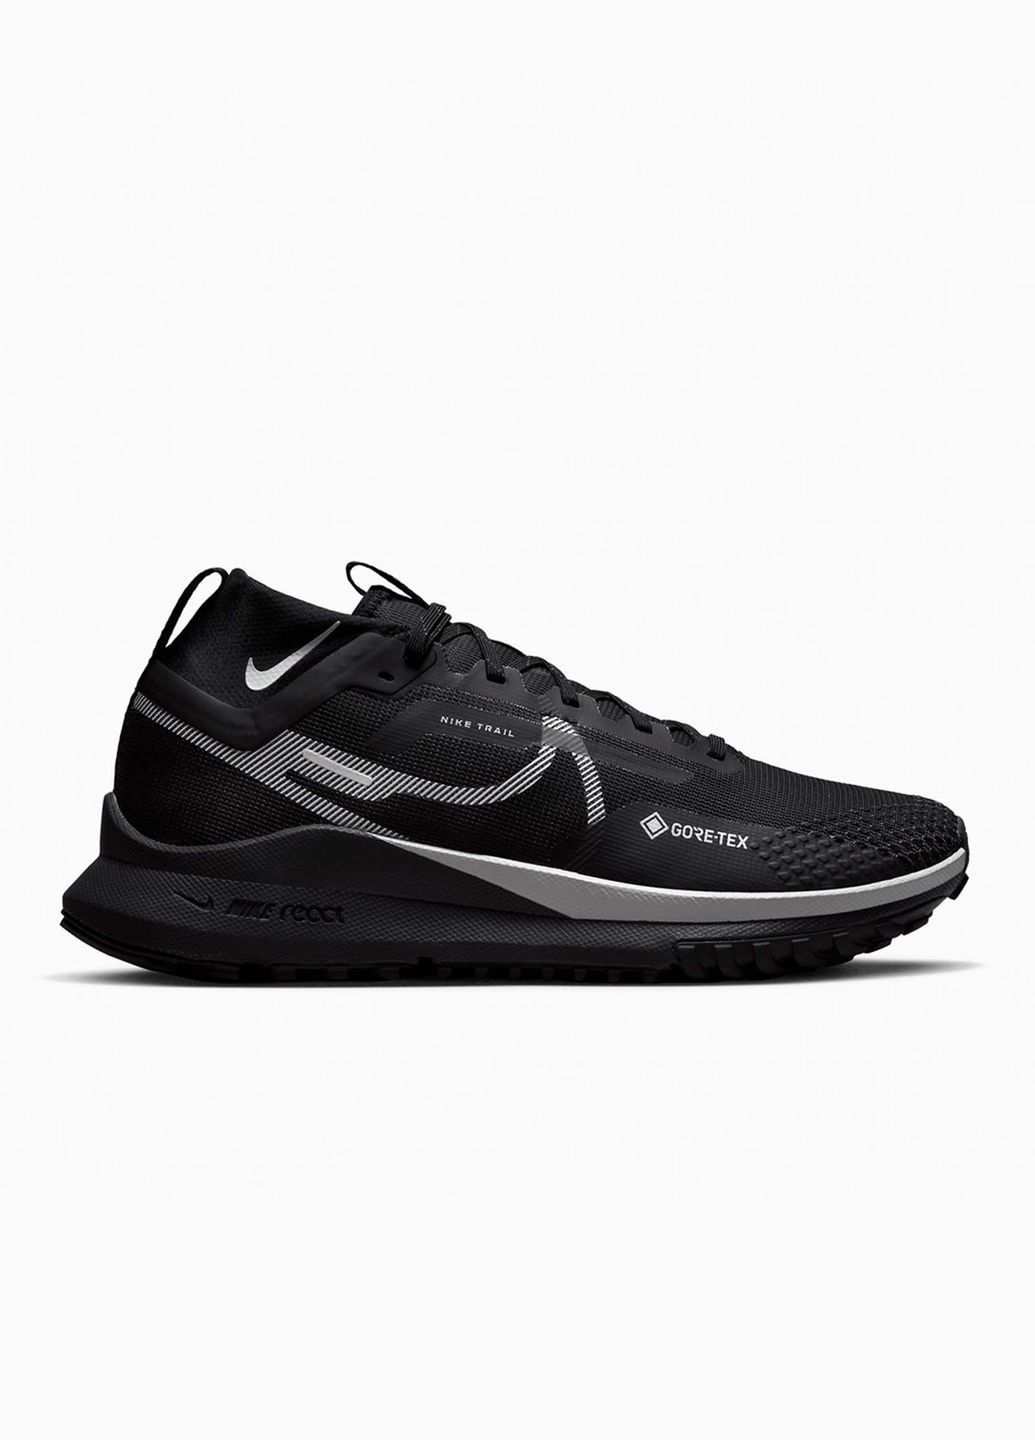 Серые всесезонные кроссовки мужские react pegasus 4 gore-tex dj7926-001 весна-осень текстиль мембрана черные Nike